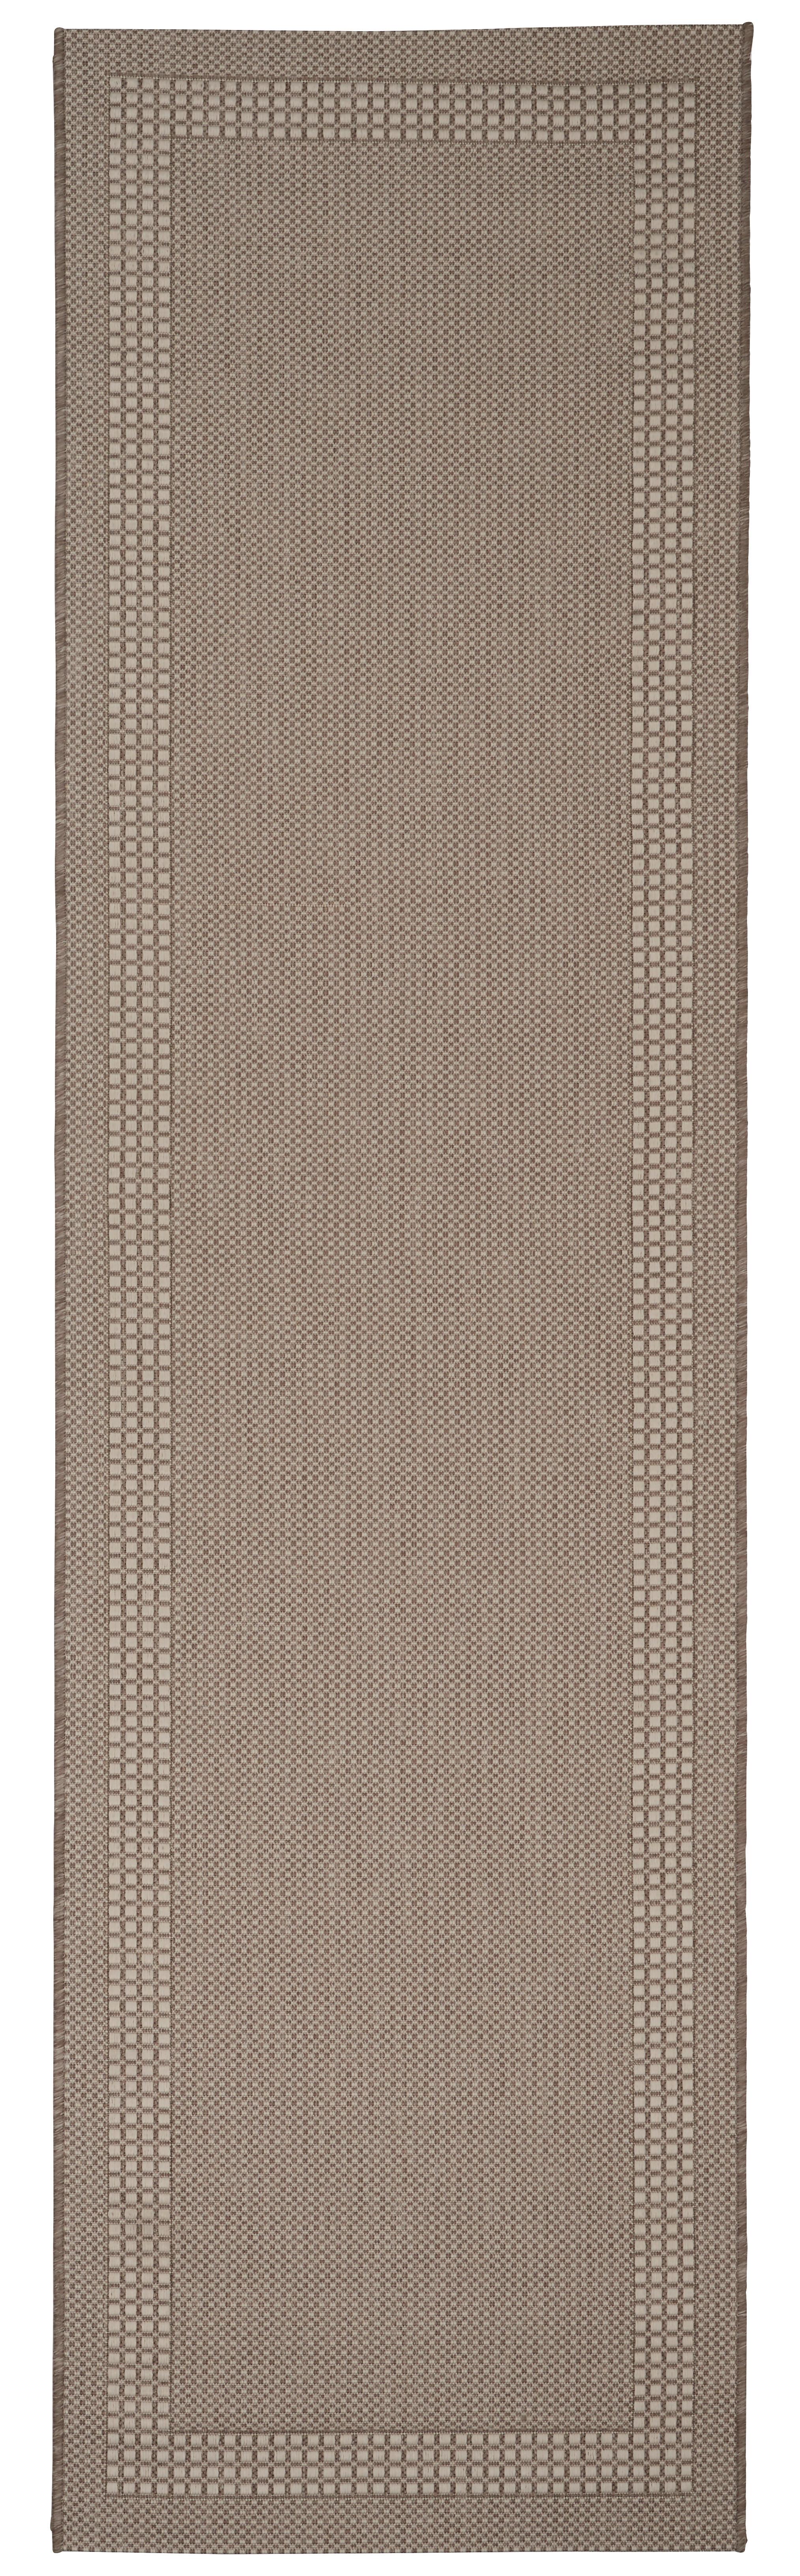 Ravno Tkana Preproga Naomi 2 - bež, Konvencionalno, tekstil (80/290cm) - Modern Living